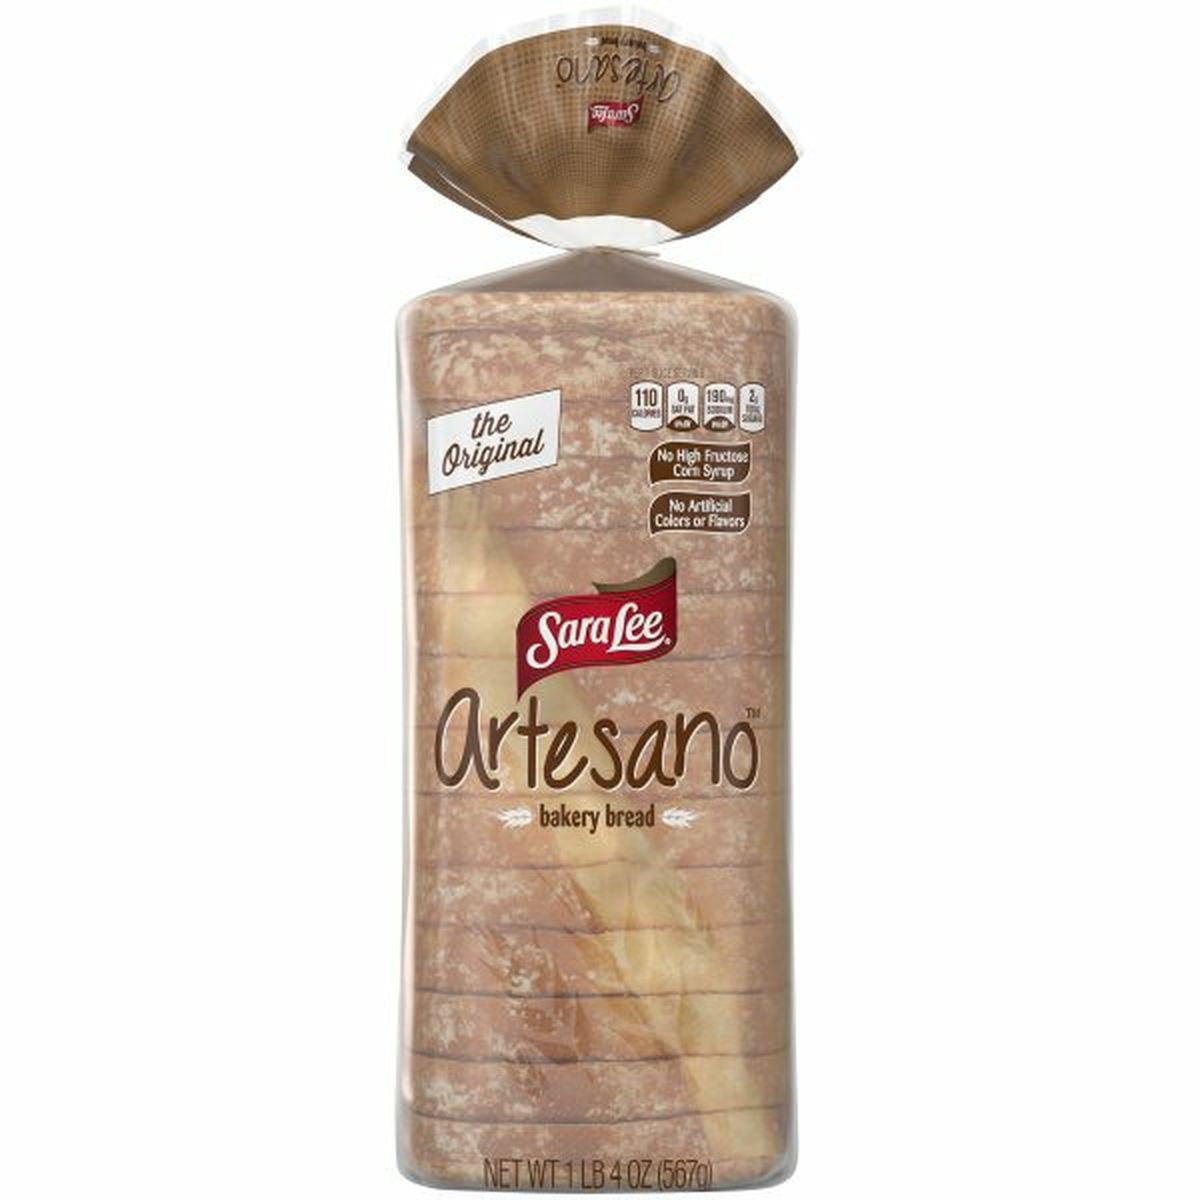 Calories in Sara Lee Artesano Original Artesano Bakery Bread